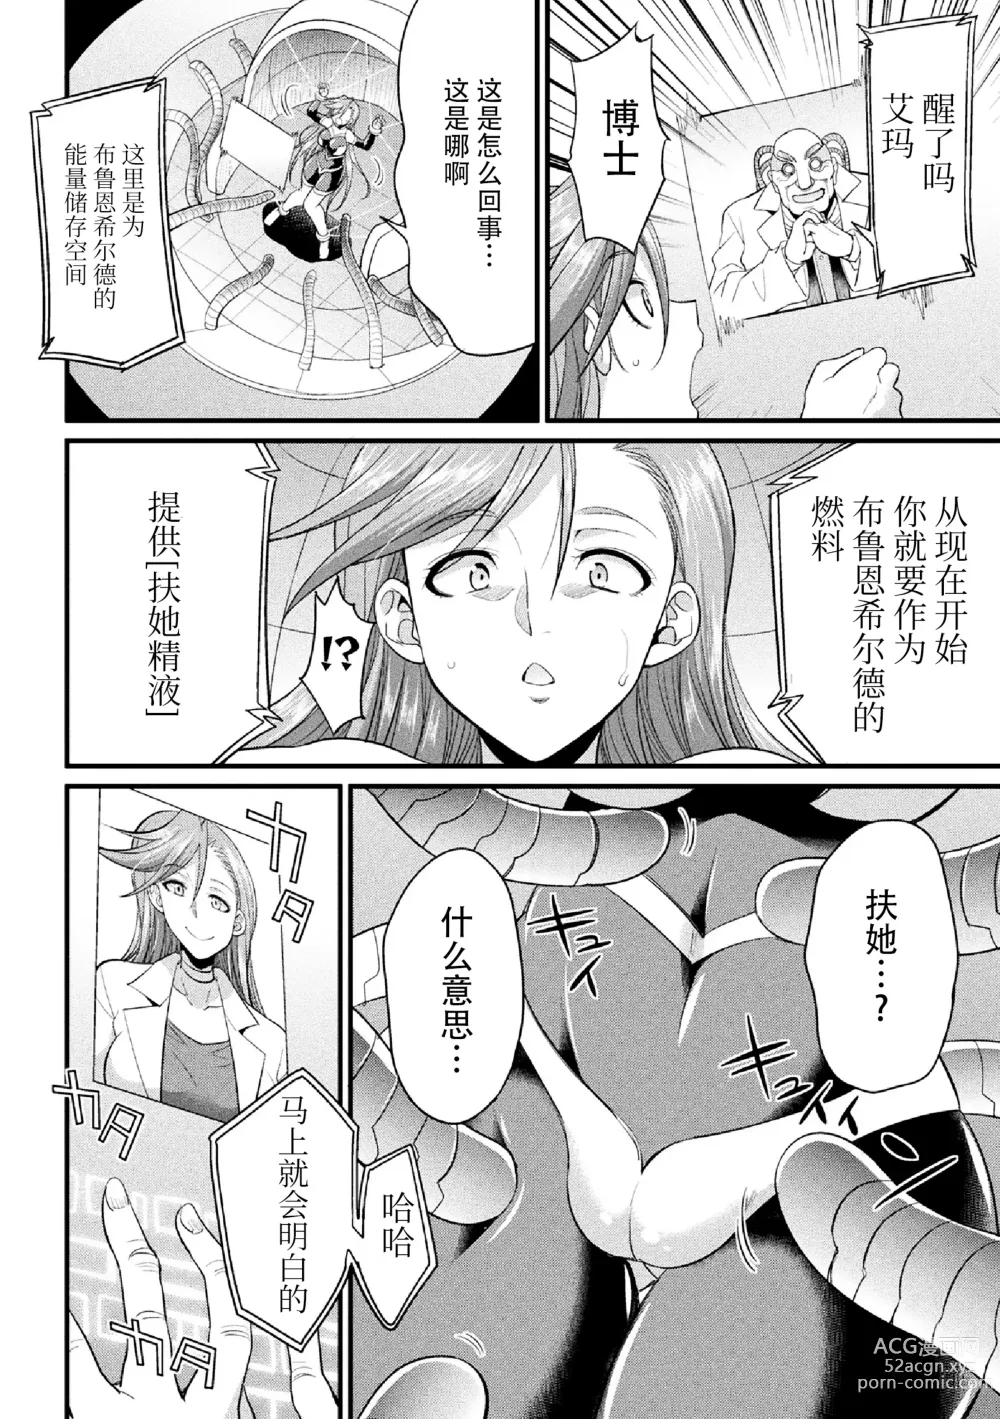 Page 6 of manga Ikusa Otome no Seisen ~Tsuika Status Futanari